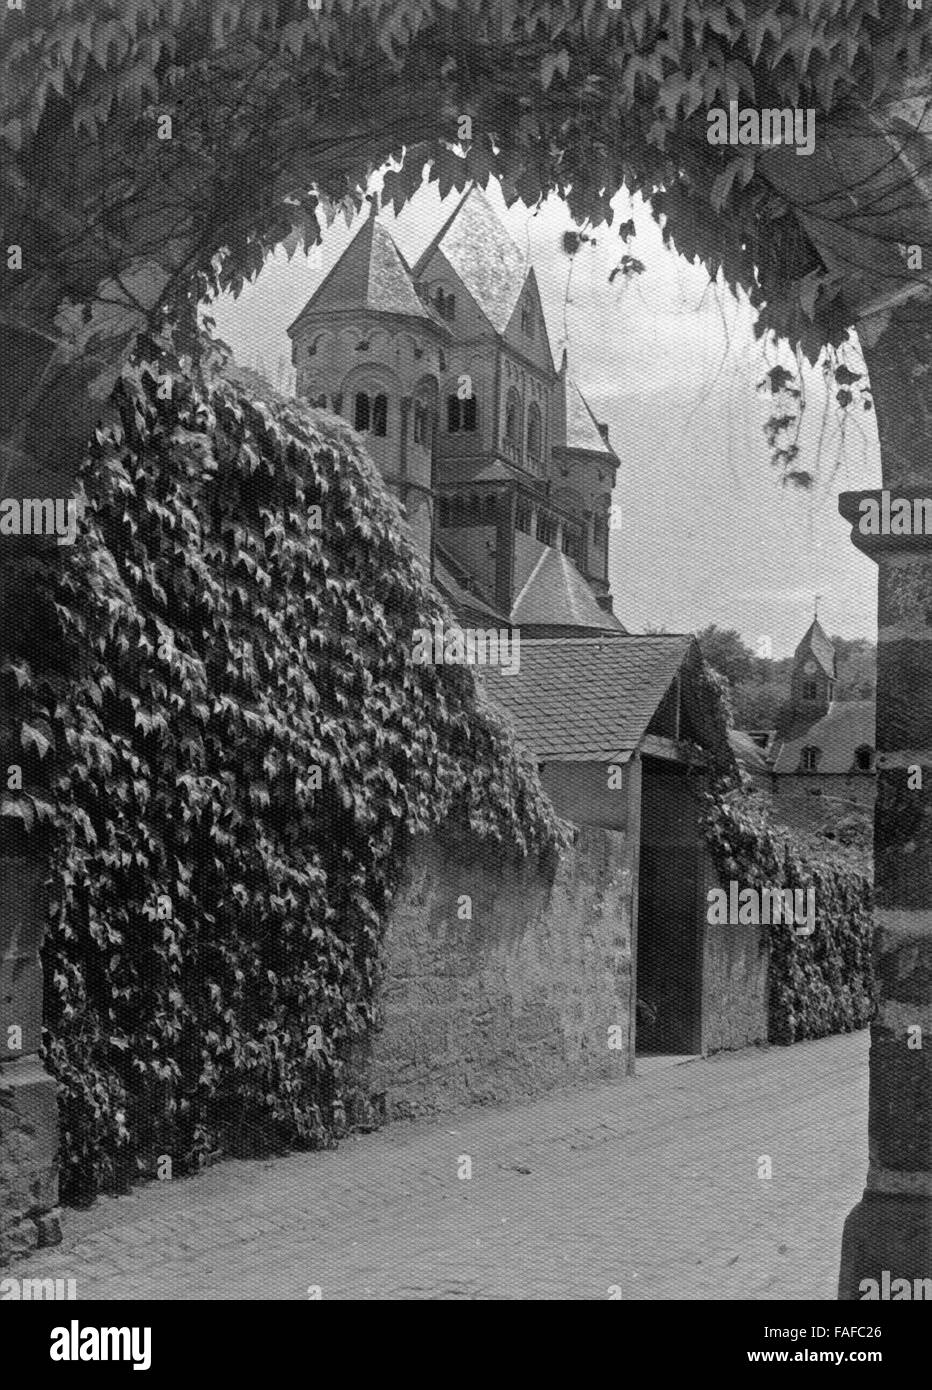 Eingang zum Kloster Maria Laach in der Vulkaneifel, Deutschland 1920er Jahre. Ingresso a Maria Laach monastero nella regione Eifel, Germania 1920s. Foto Stock